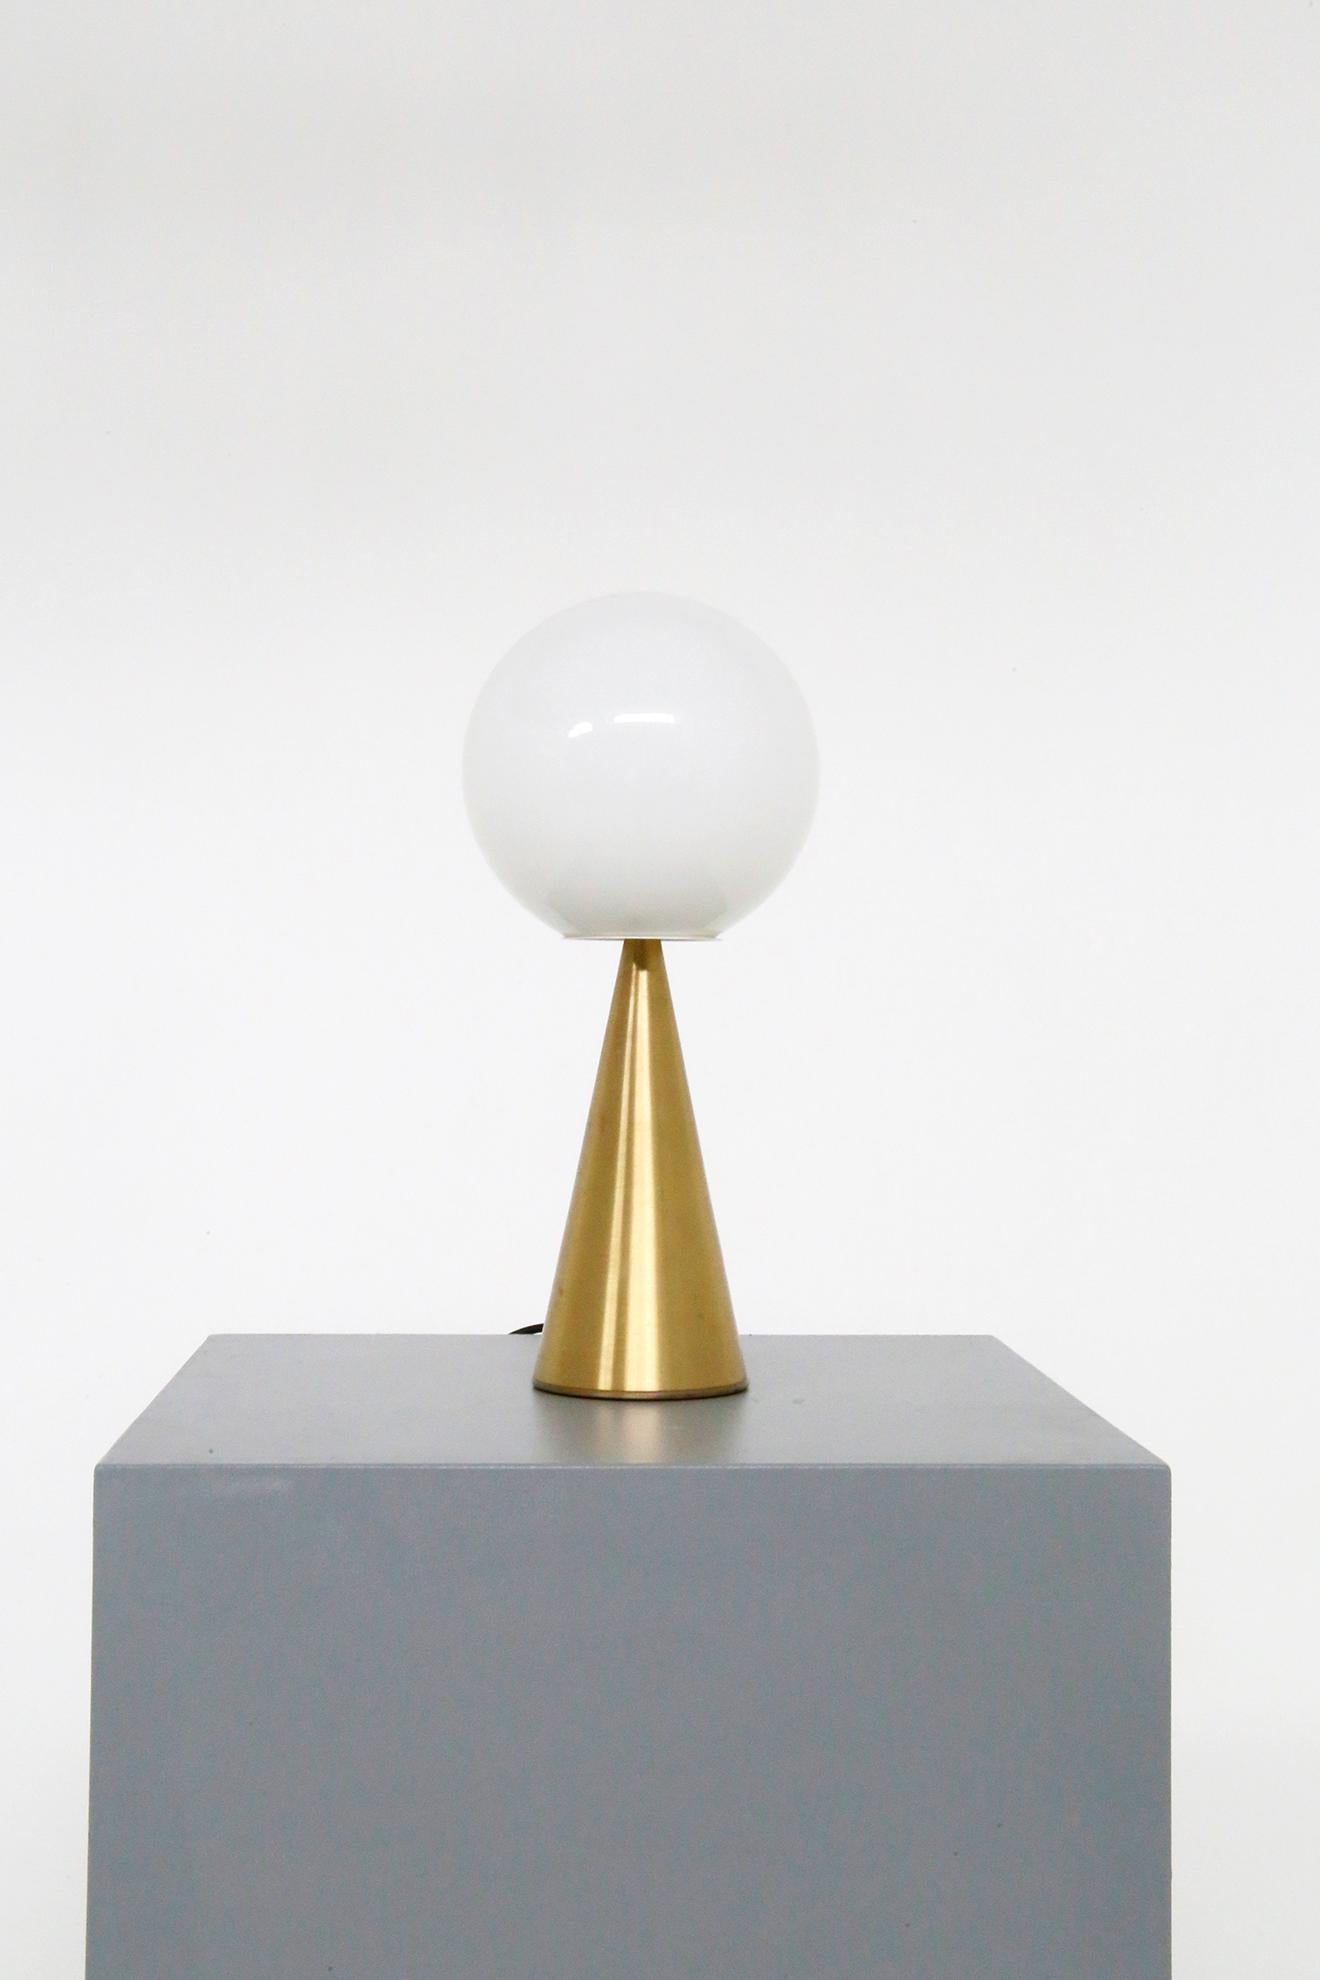 Lampe de table conçue par Gio Ponti pour la manufacture Fontana Arte en 1960. Le modèle représenté est Bilia. Bilia est la lampe de table parfaite aux lignes droites, nettes et bien définies, un modèle qui ne se lasse pas, donc un classique